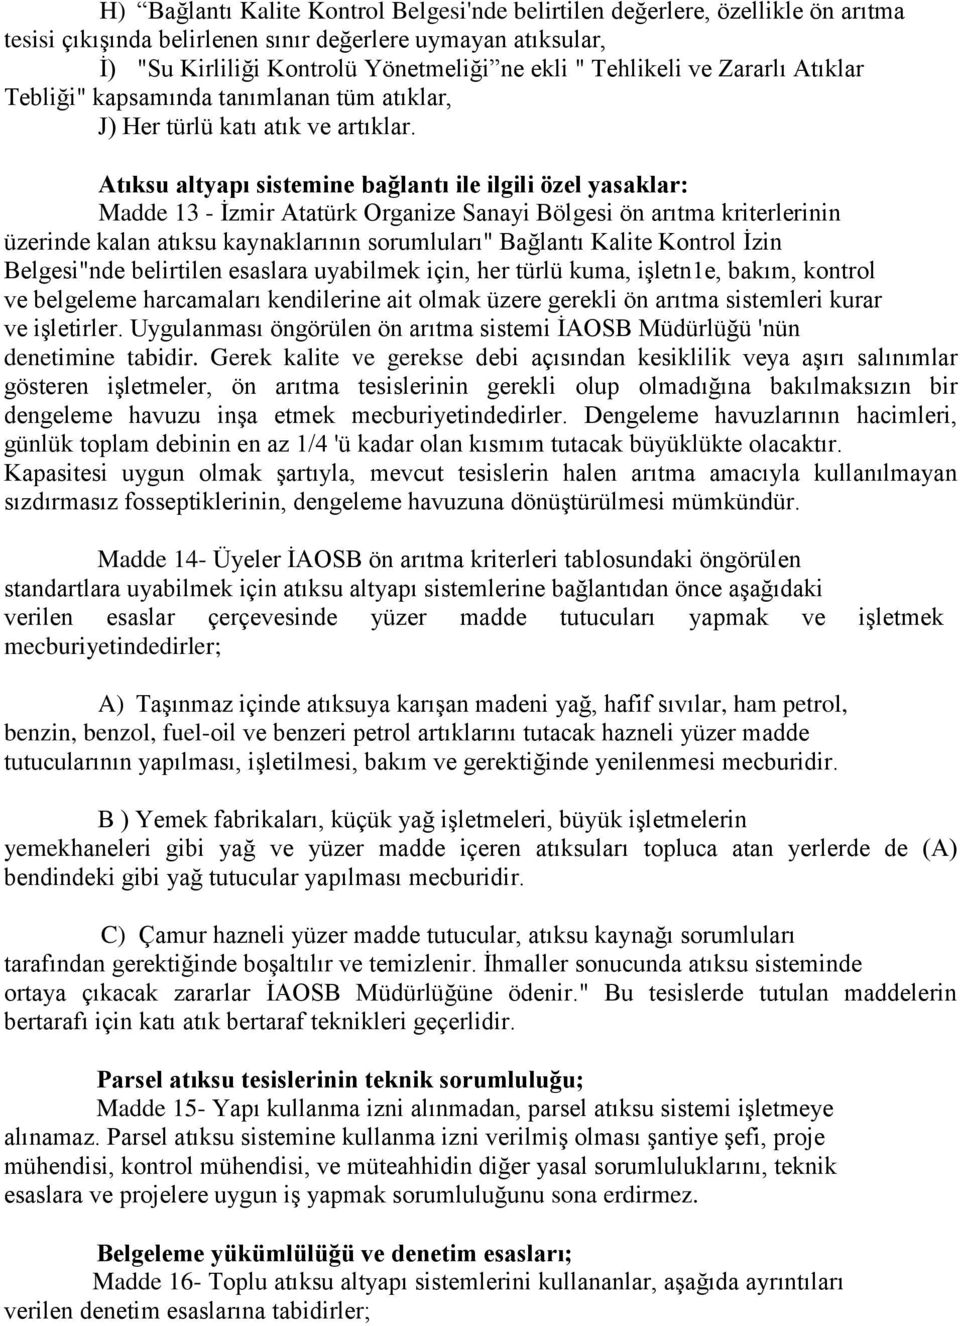 Atıksu altyapı sistemine bağlantı ile ilgili özel yasaklar Madde 13 - İzmir Atatürk Organize Sanayi Bölgesi ön arıtma kriterlerinin üzerinde kalan atıksu kaynaklarının sorumluları" Bağlantı Kalite